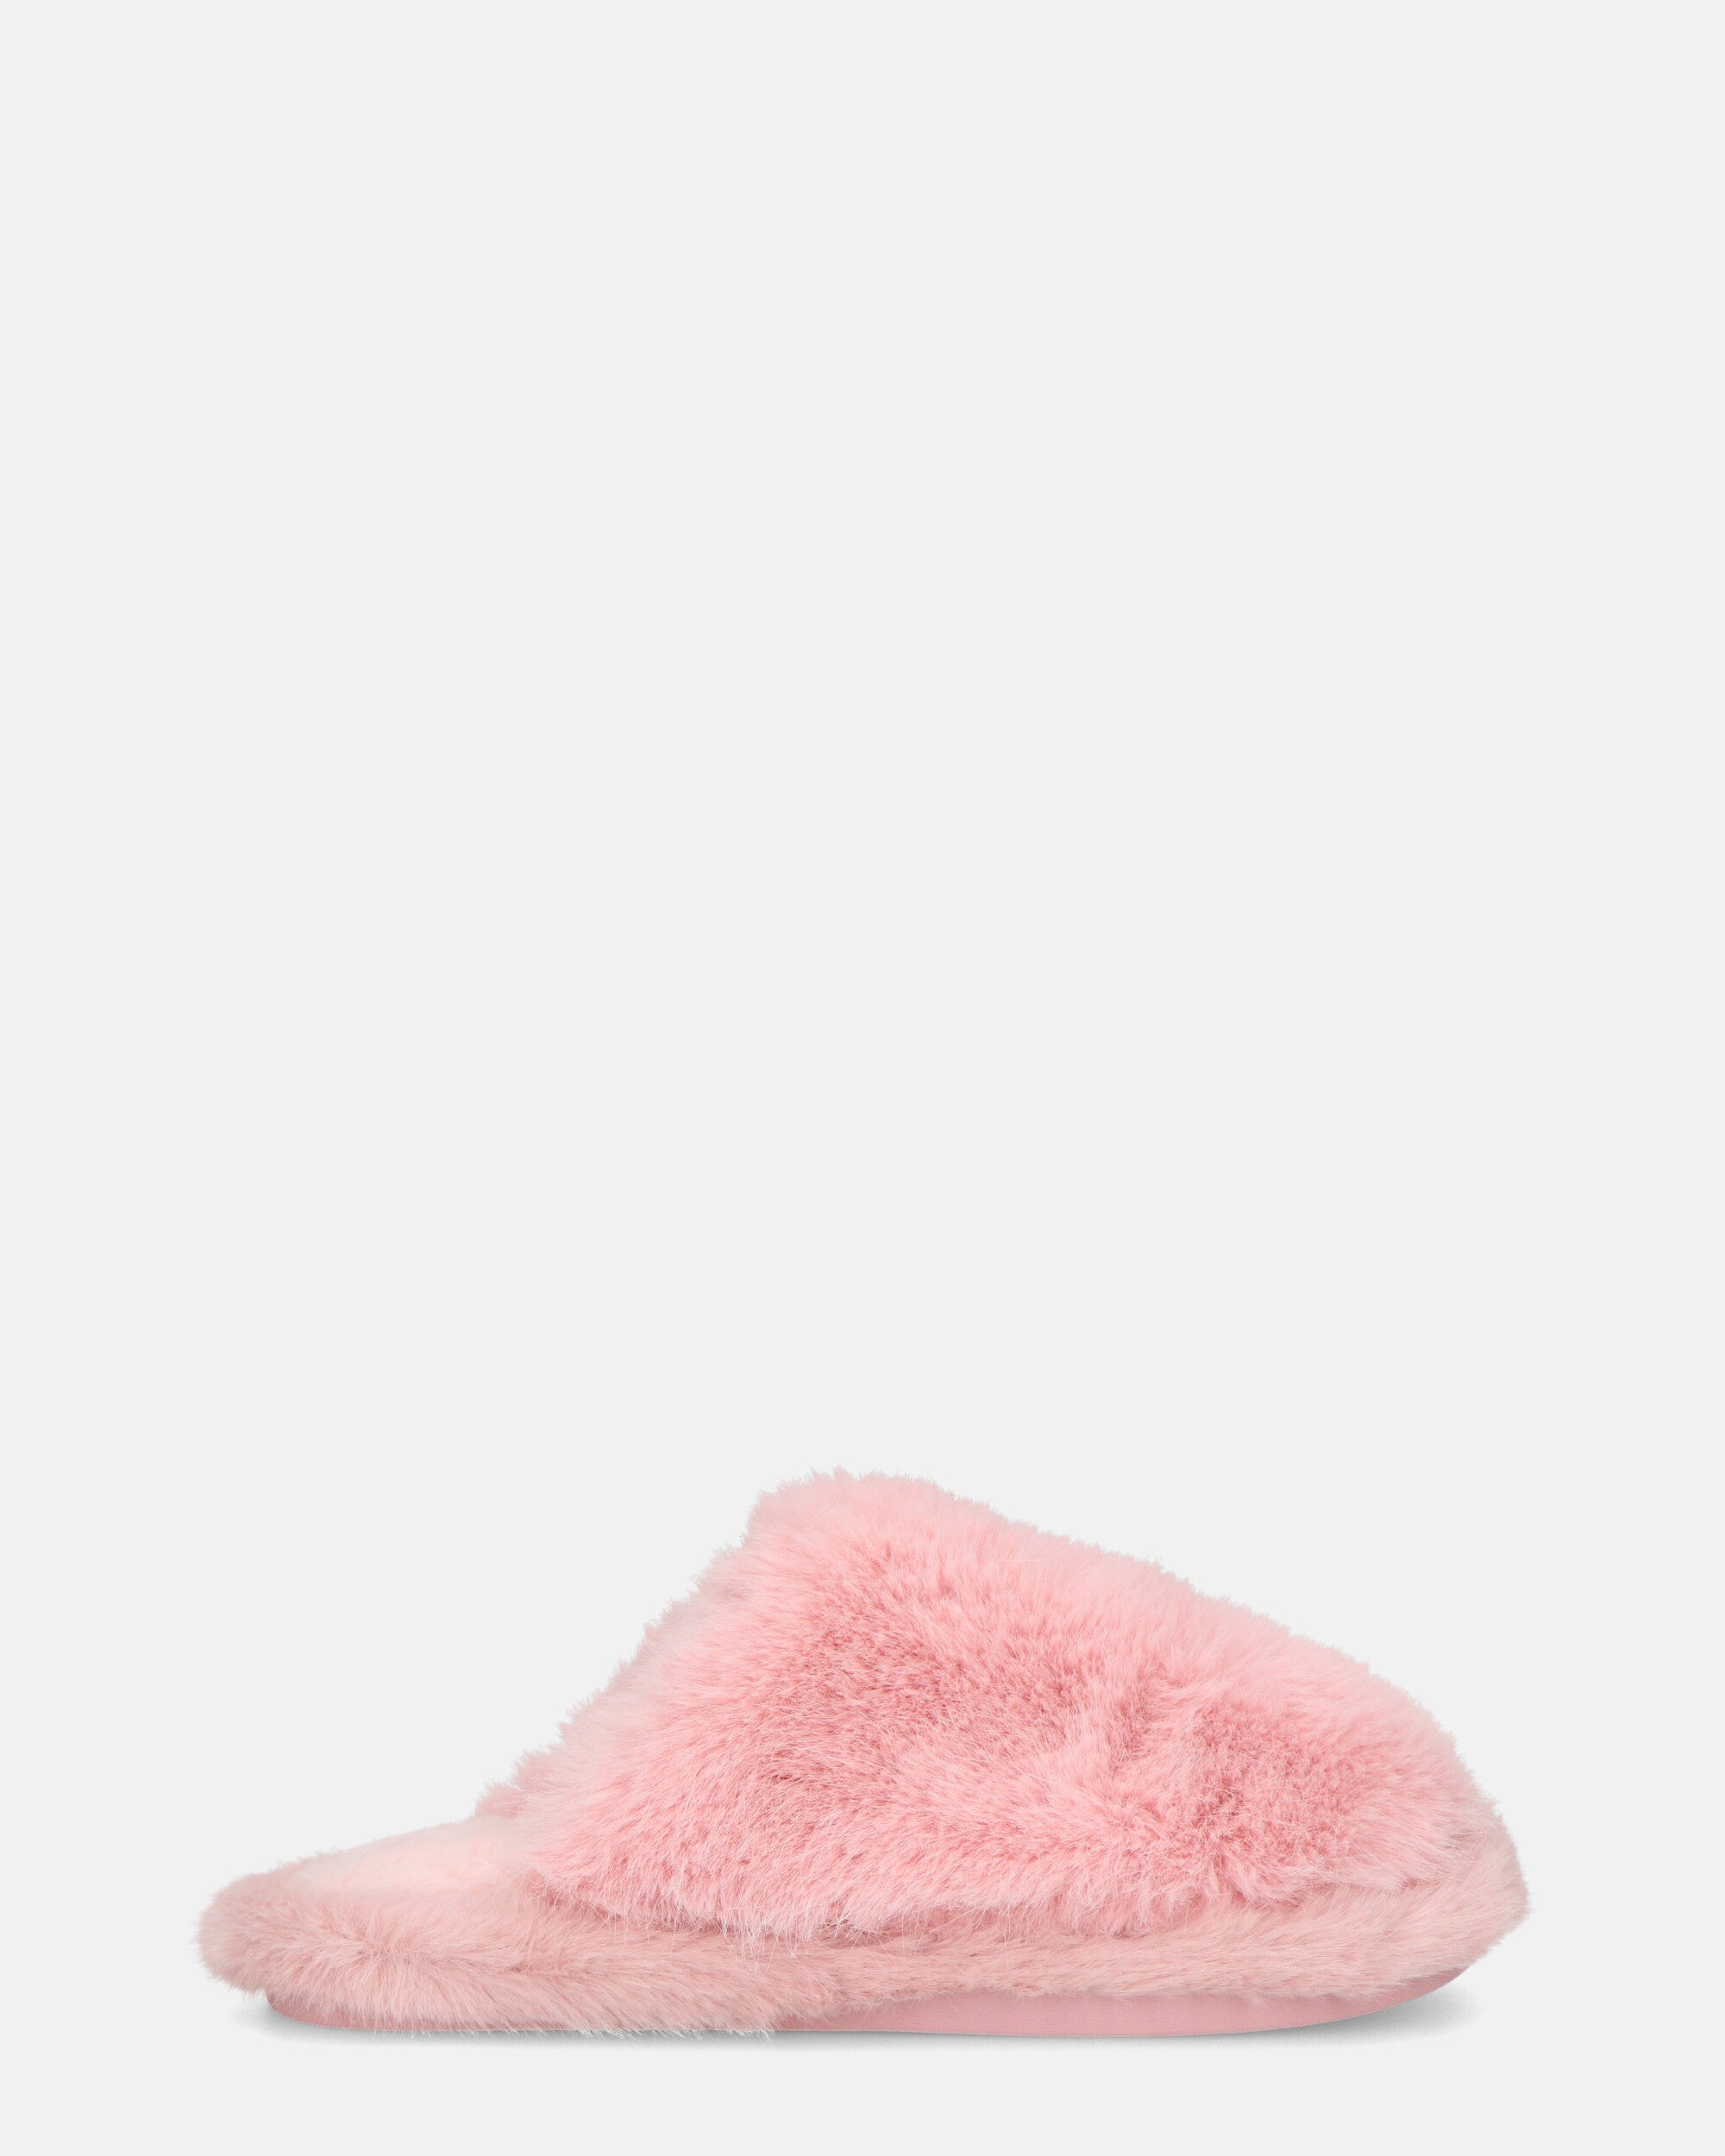 NOARA - chaussons en fourrure rose à bouts fermés